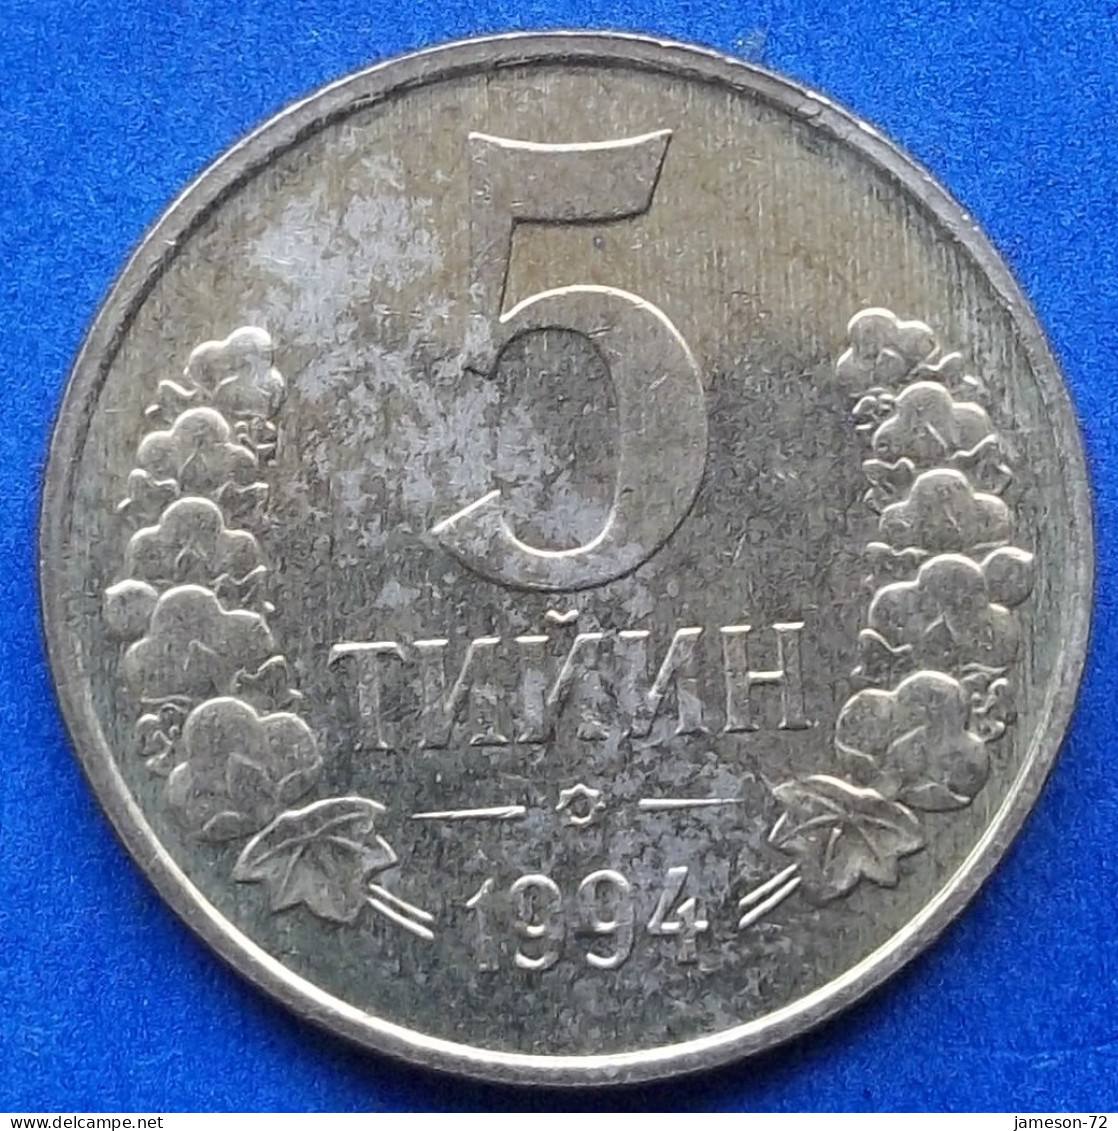 UZBEKISTAN - 5 Tiyin 1994 KM# 3 Independent Republic (1991) - Edelweiss Coins - Oezbekistan